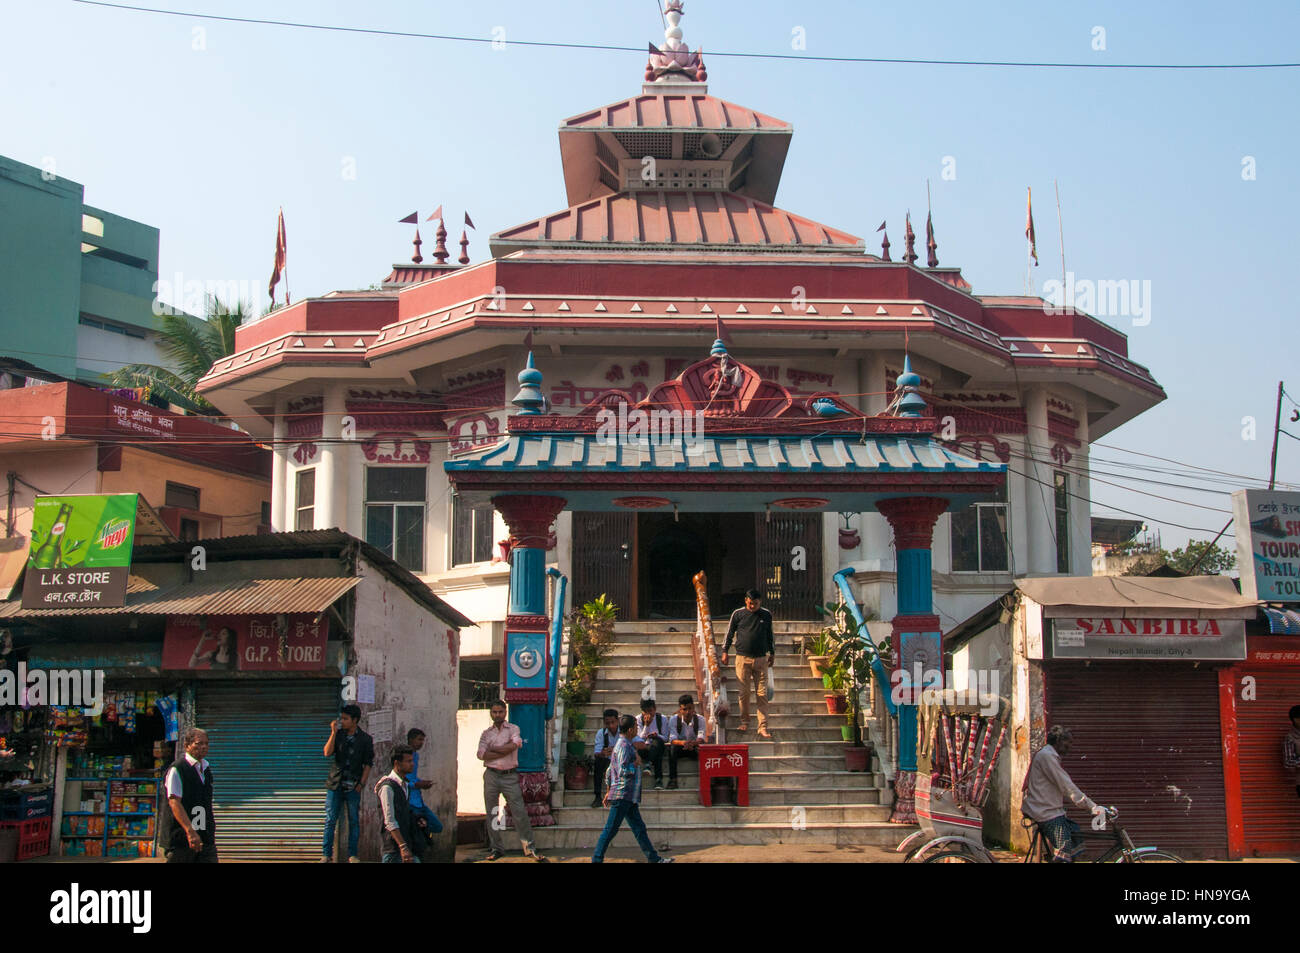 El Mandir Nepalí, un histórico templo hindú en Guwahati, capital del estado de Assam, al noreste de la India Foto de stock